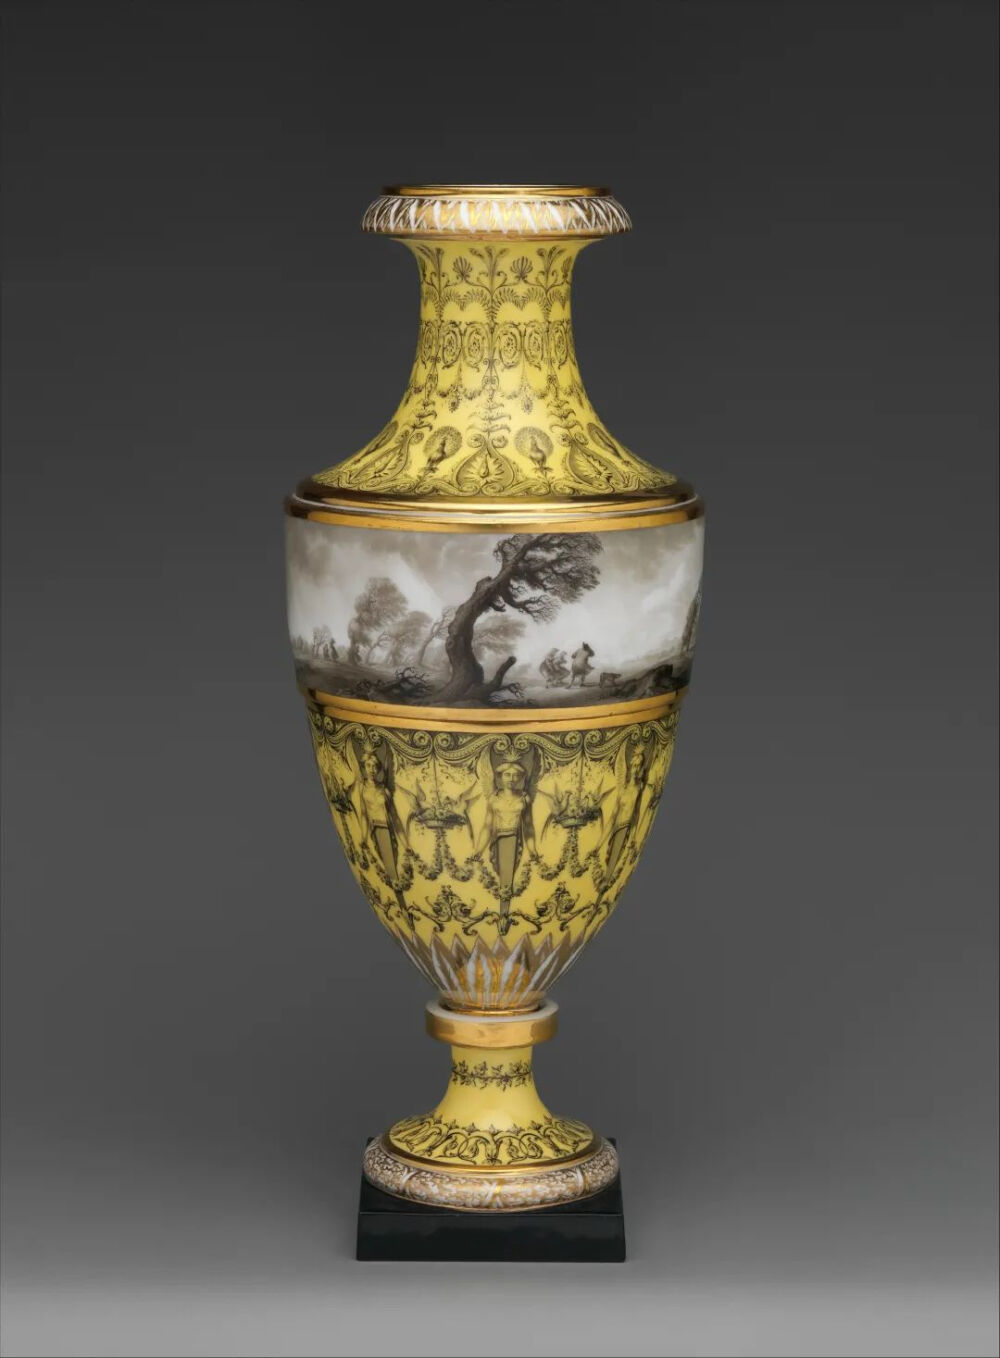 国大都会博物馆藏中的18世纪末帝赫尔花瓶上，画师查尔斯·艾蒂安·勒格伊用素描与油画一般的精细，绘出壮丽风景。